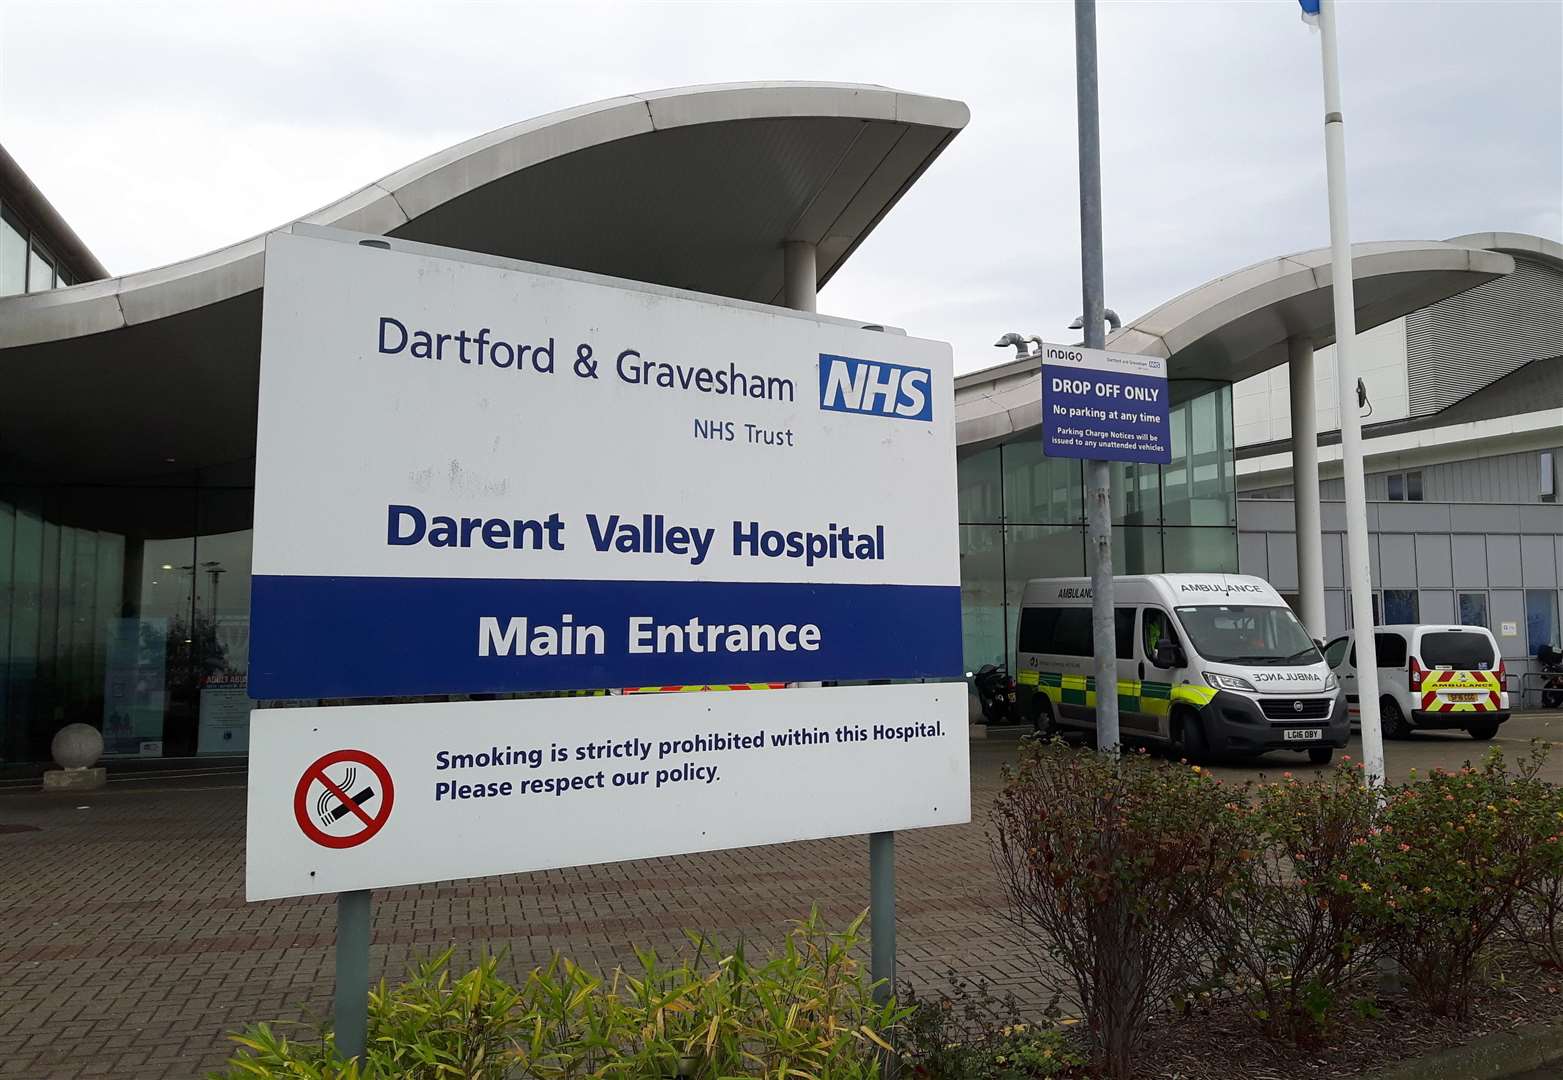 Darent Valley Hospital, Dartford.